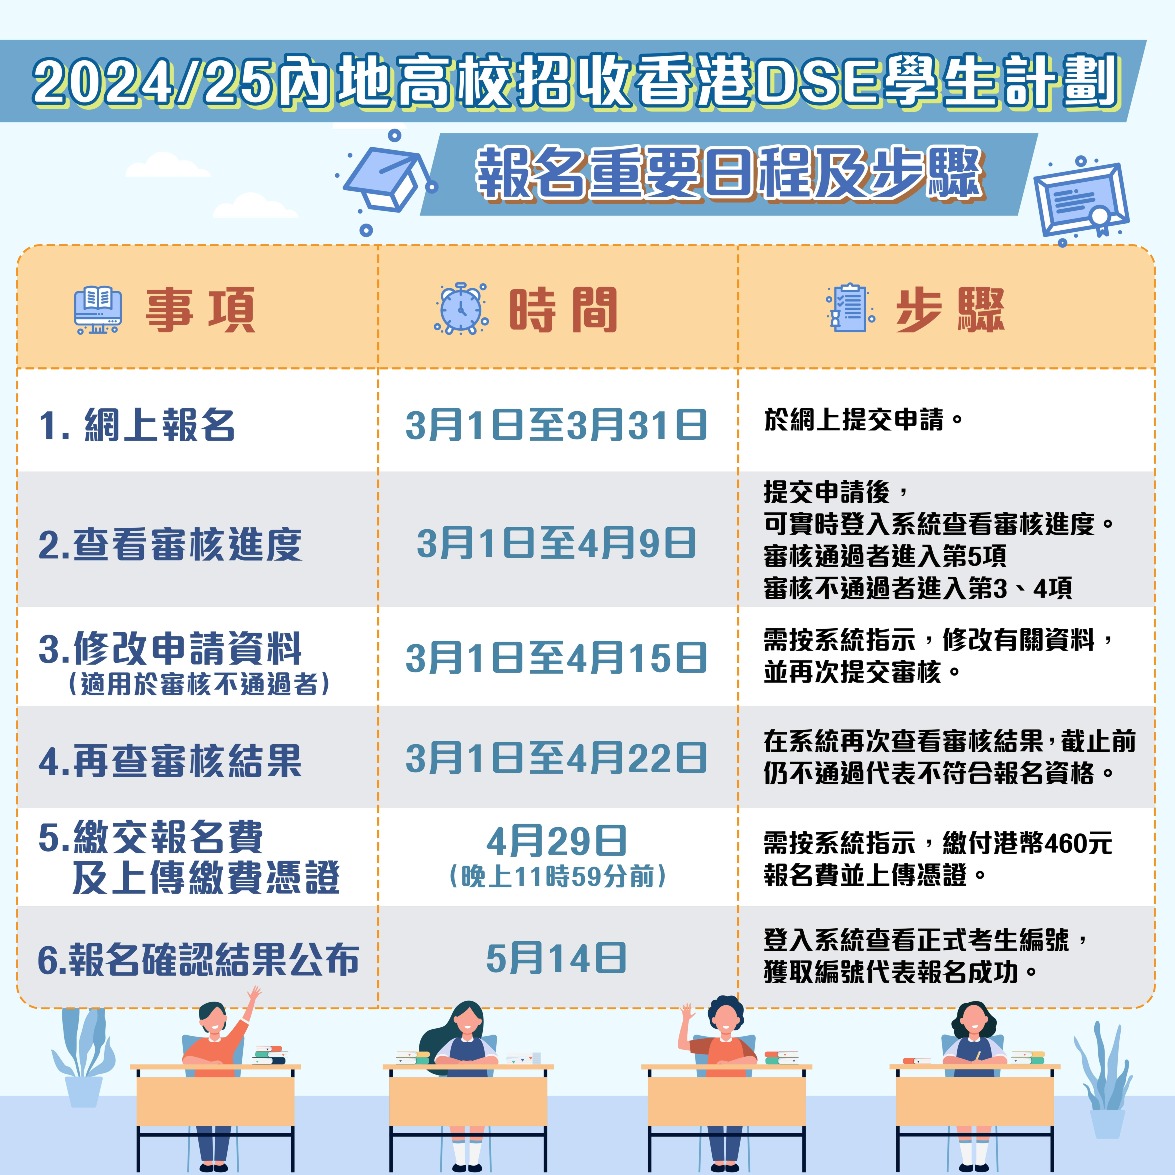 2024/25内地高校招收香港DSE考生計劃報名日程